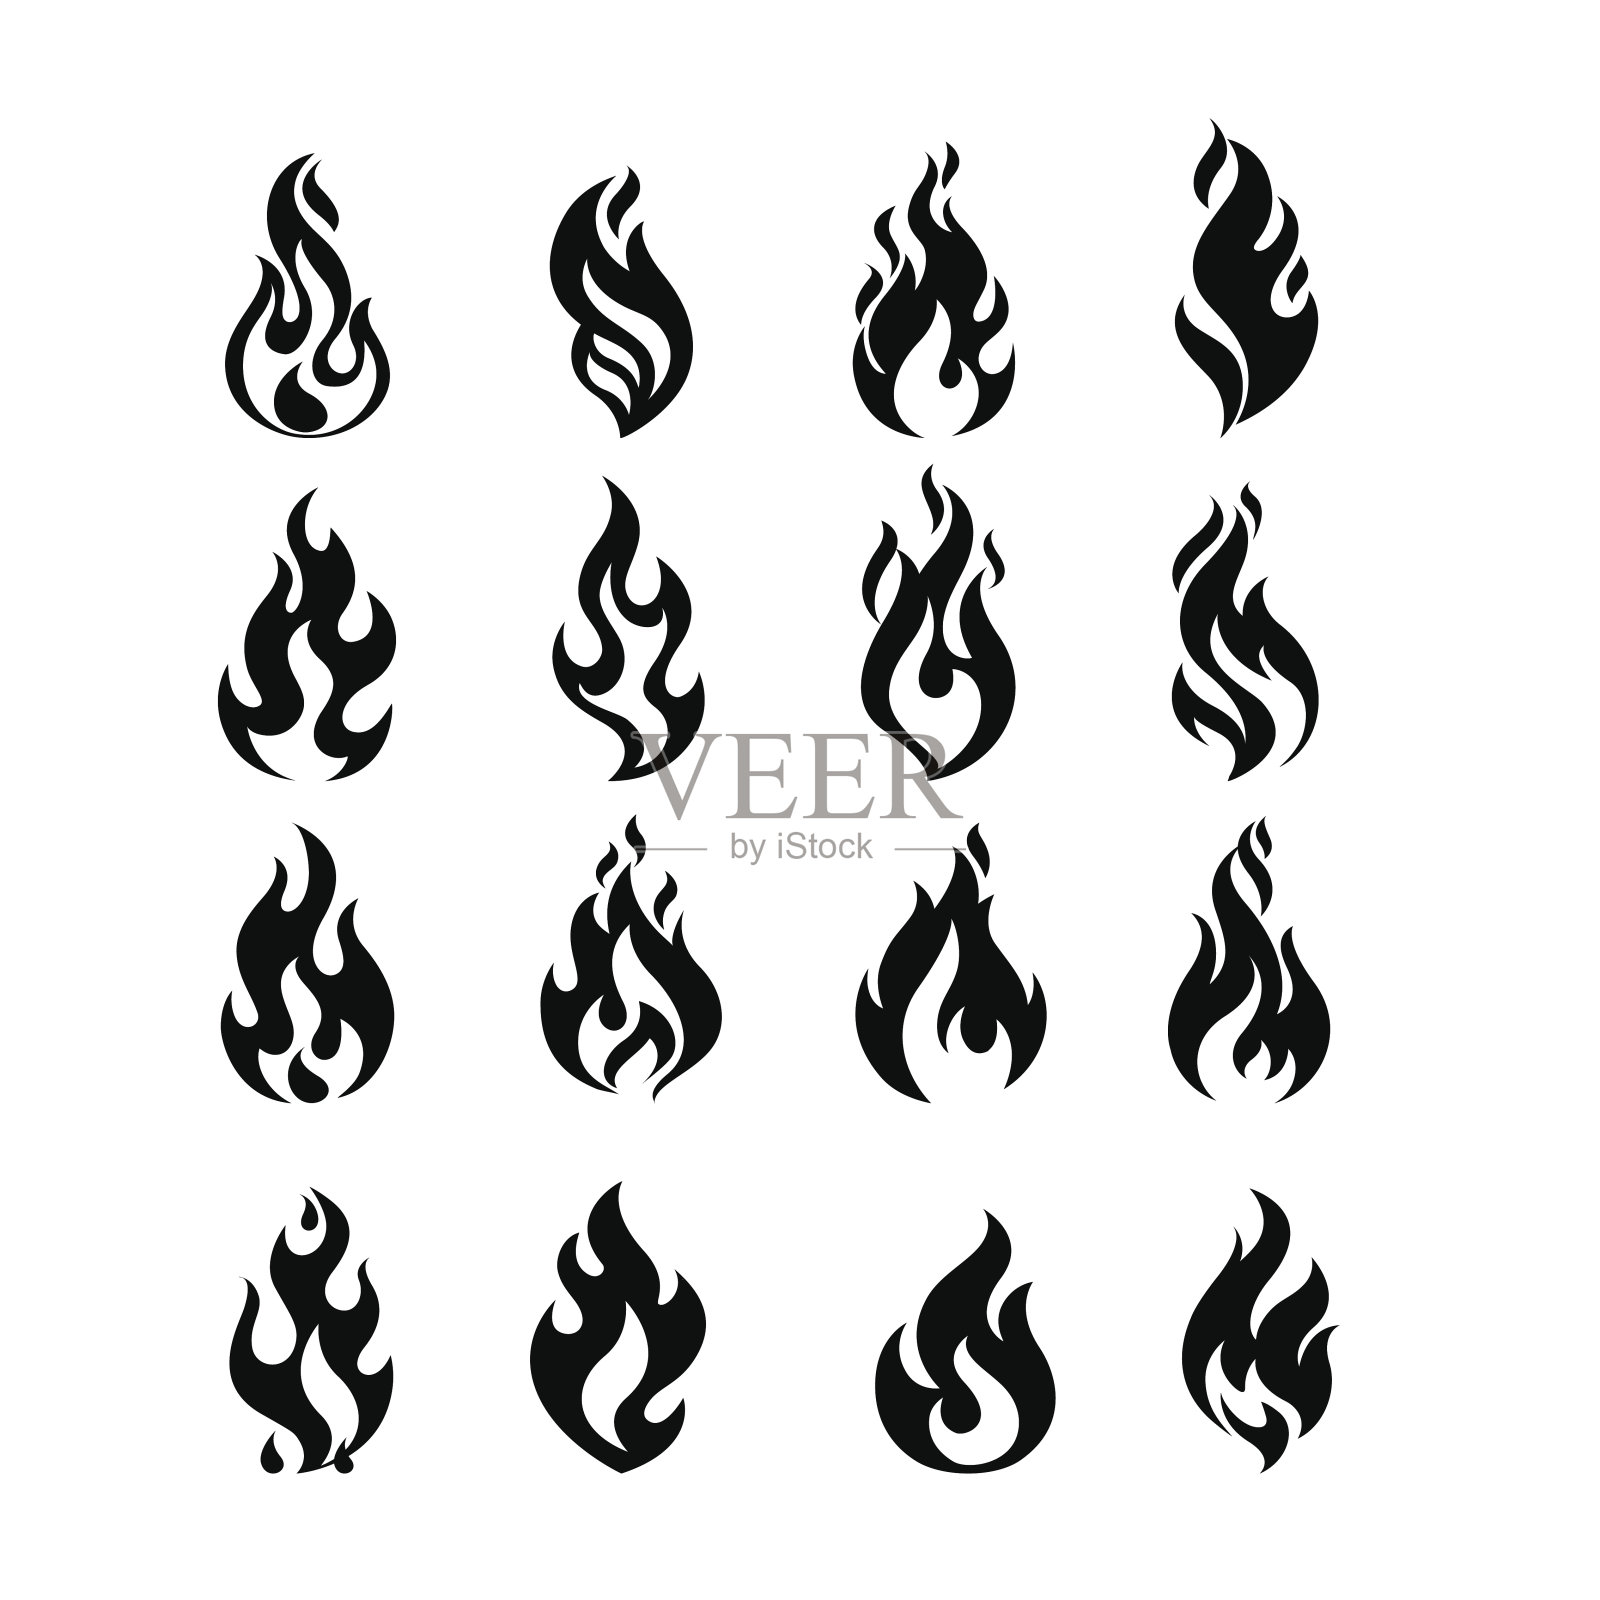 黑色燃烧的火焰火焰图标集设计矢量模板。燃烧火球概念图标包。热地狱插图。篝火创造性的集合。图标素材